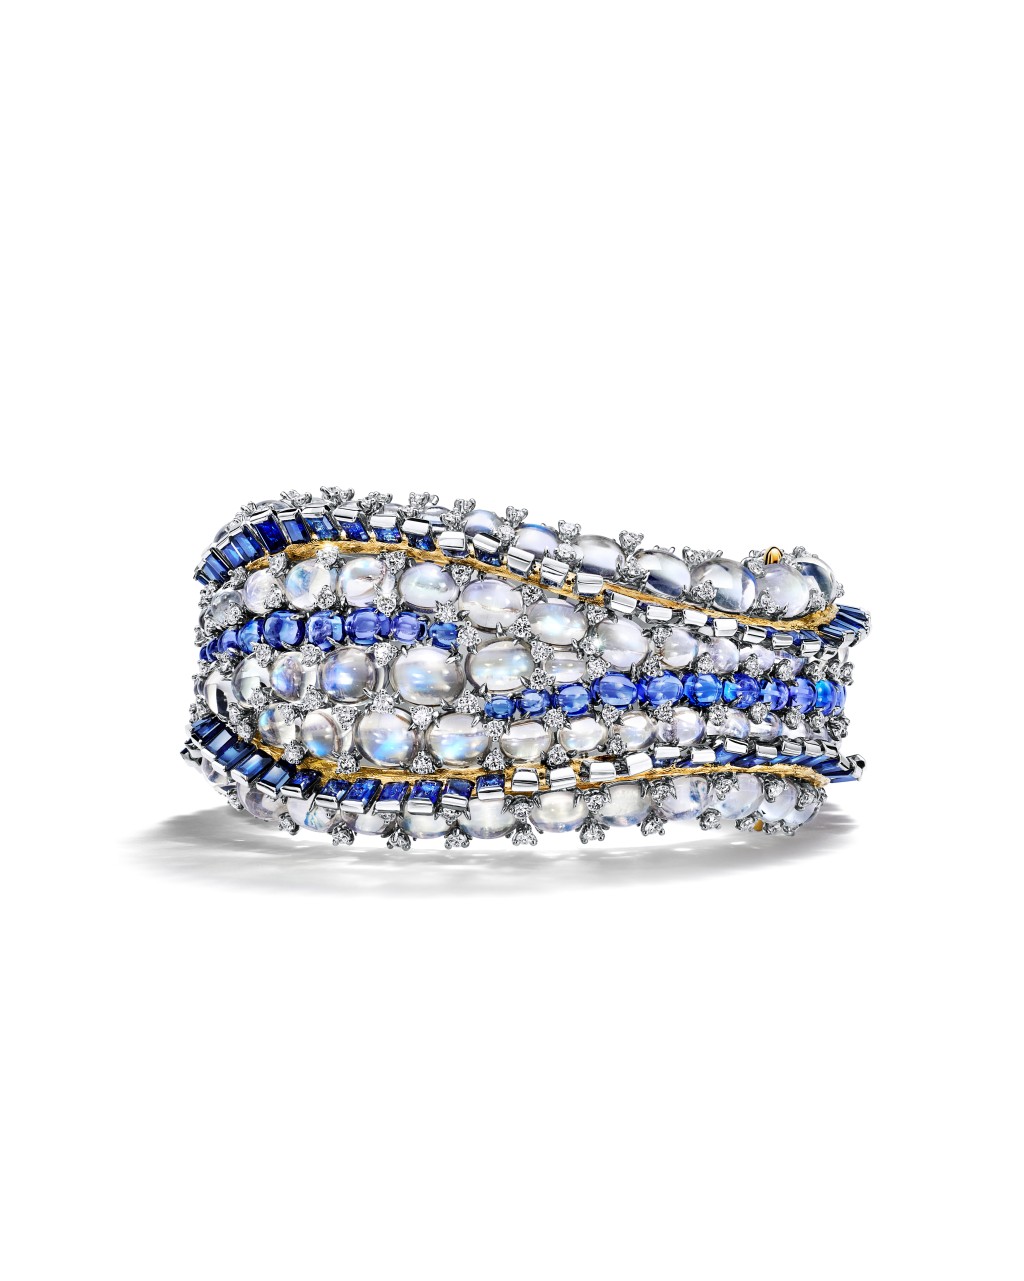 花舞海葵（Sea Anemone）主题铂金及18K黄金手镯，镶嵌蓝宝石、蓝宝石、坦桑石、月亮石及钻石。